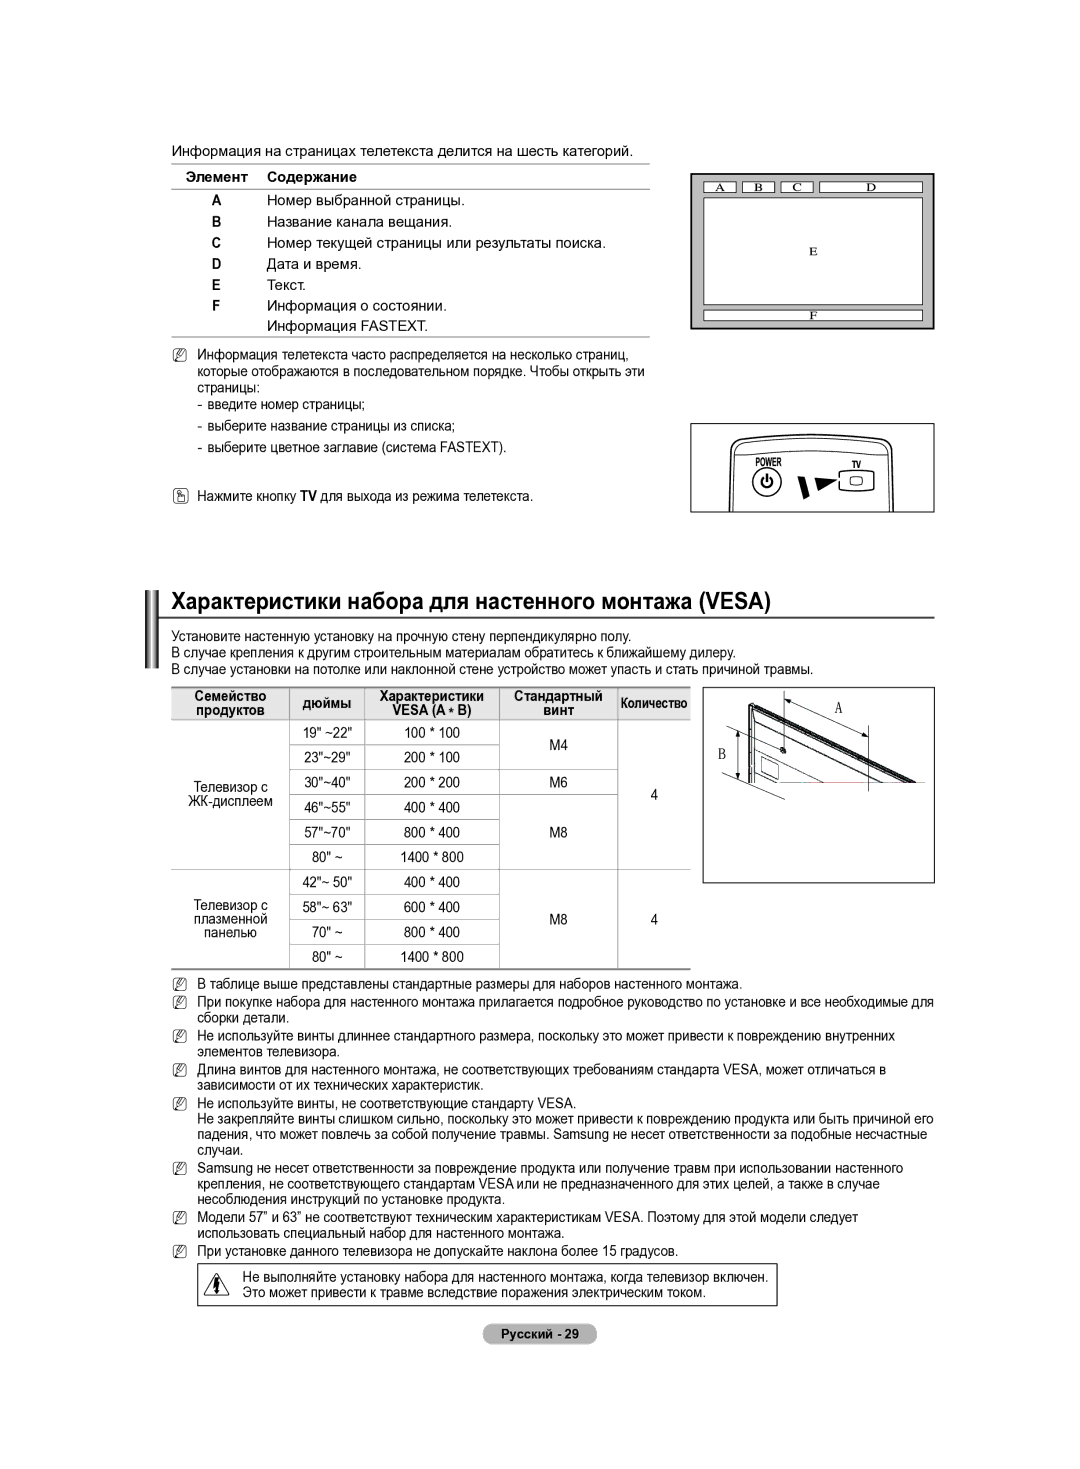 Samsung PS42B430P manual Характеристики набора для настенного монтажа Vesa, Элемент Содержание, Vesa a * B, ЖК-дисплеем 